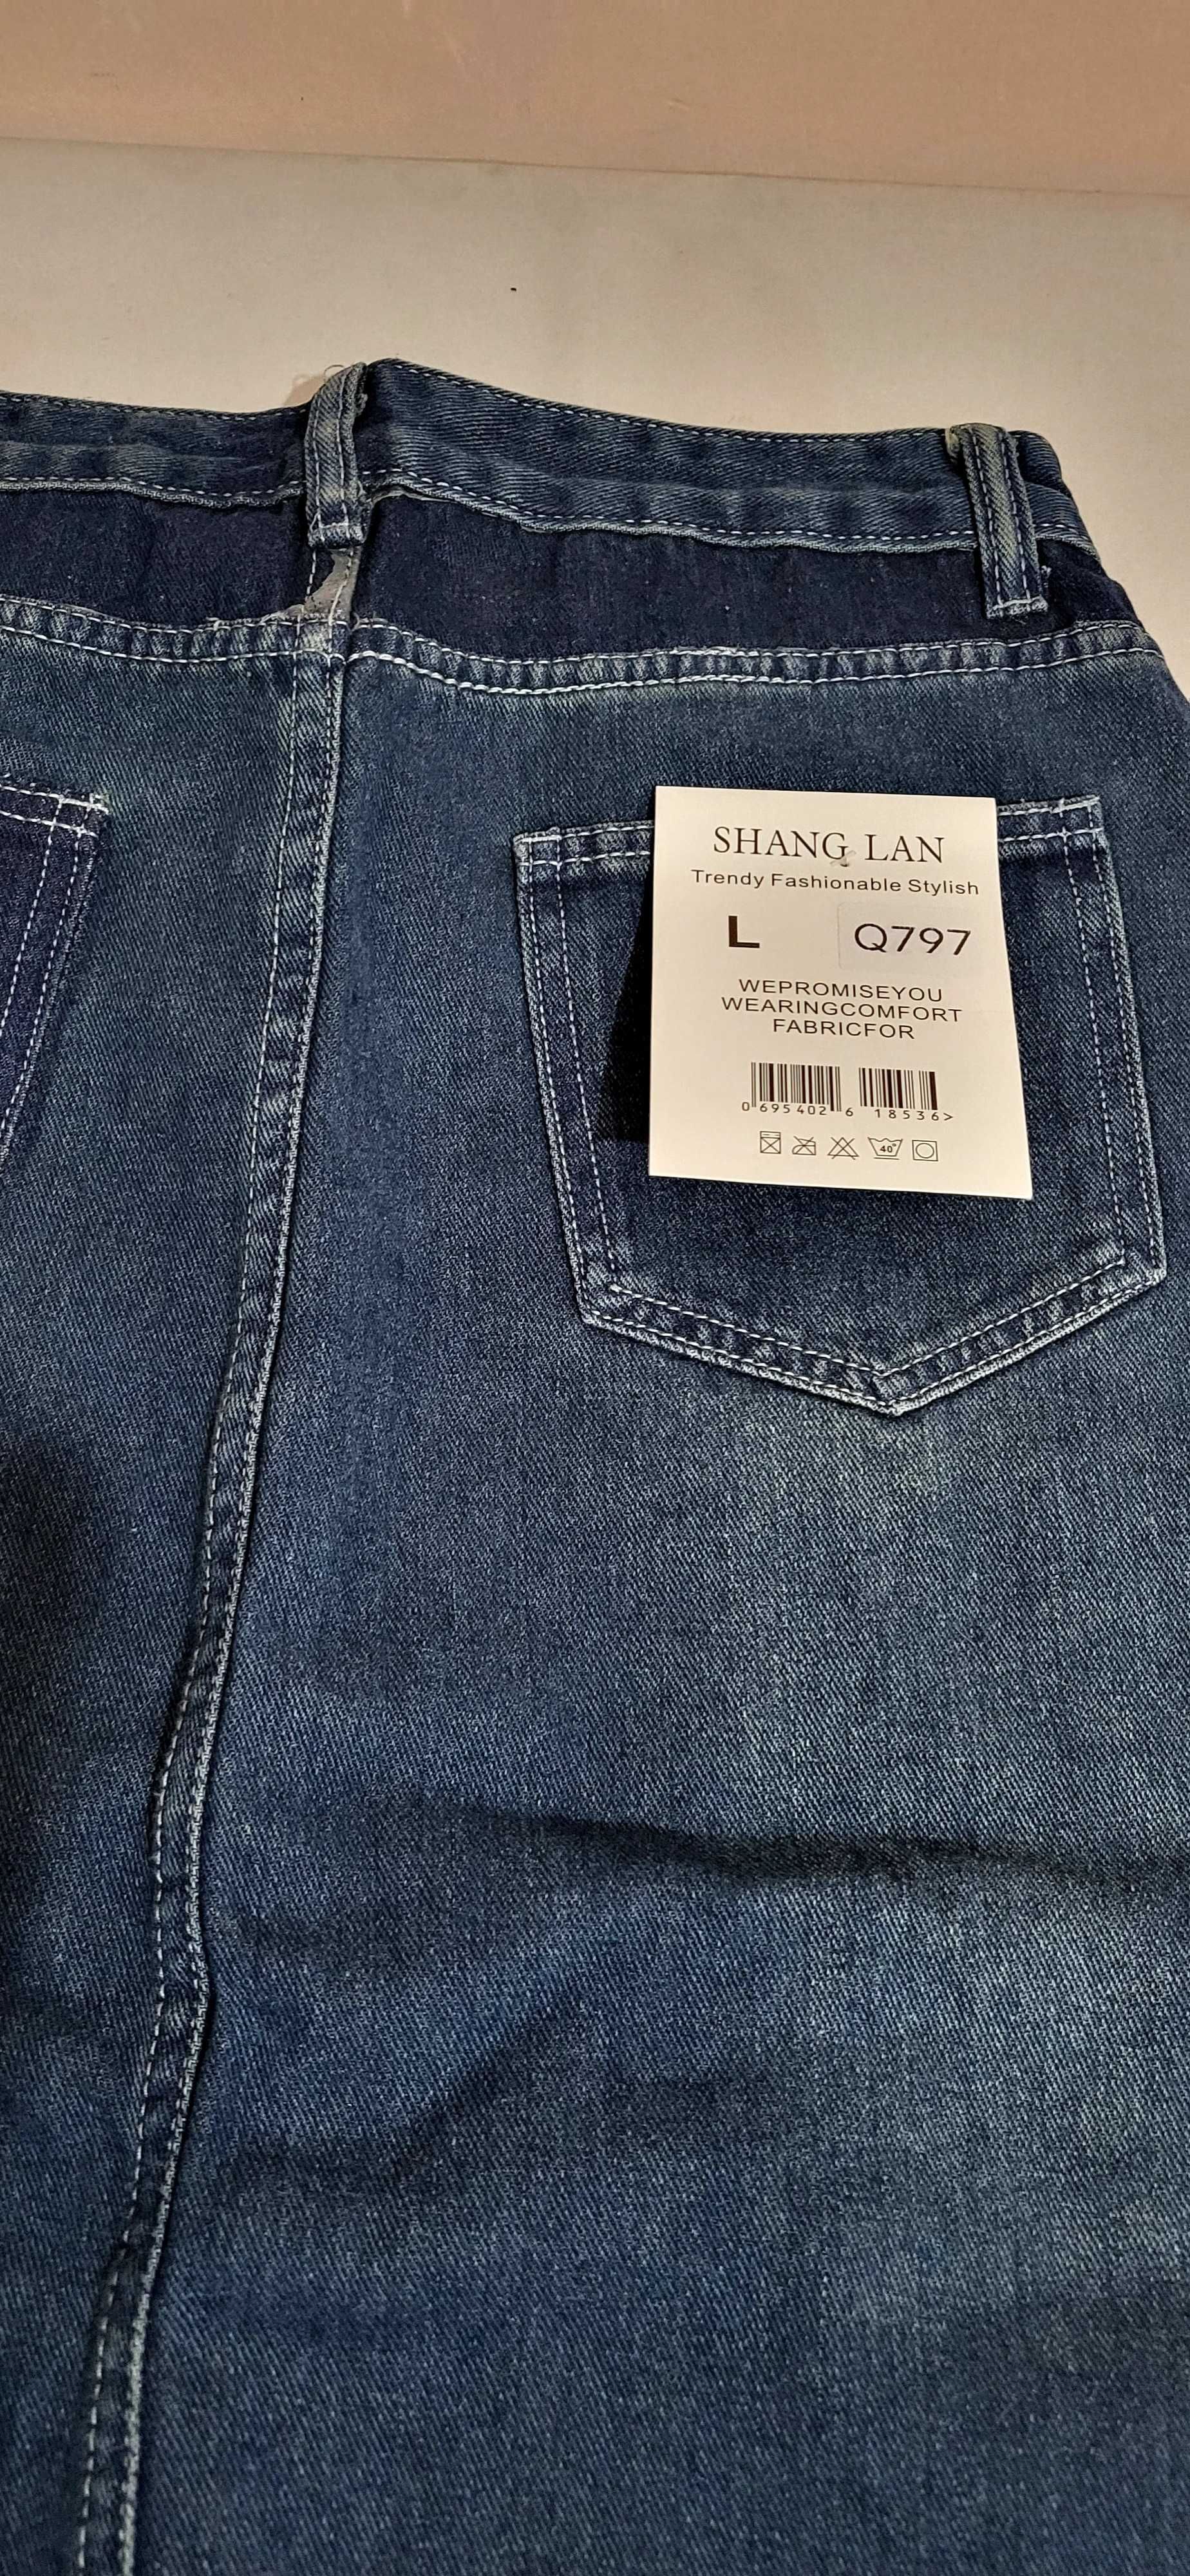 Продам джинсовую юбку размер 46